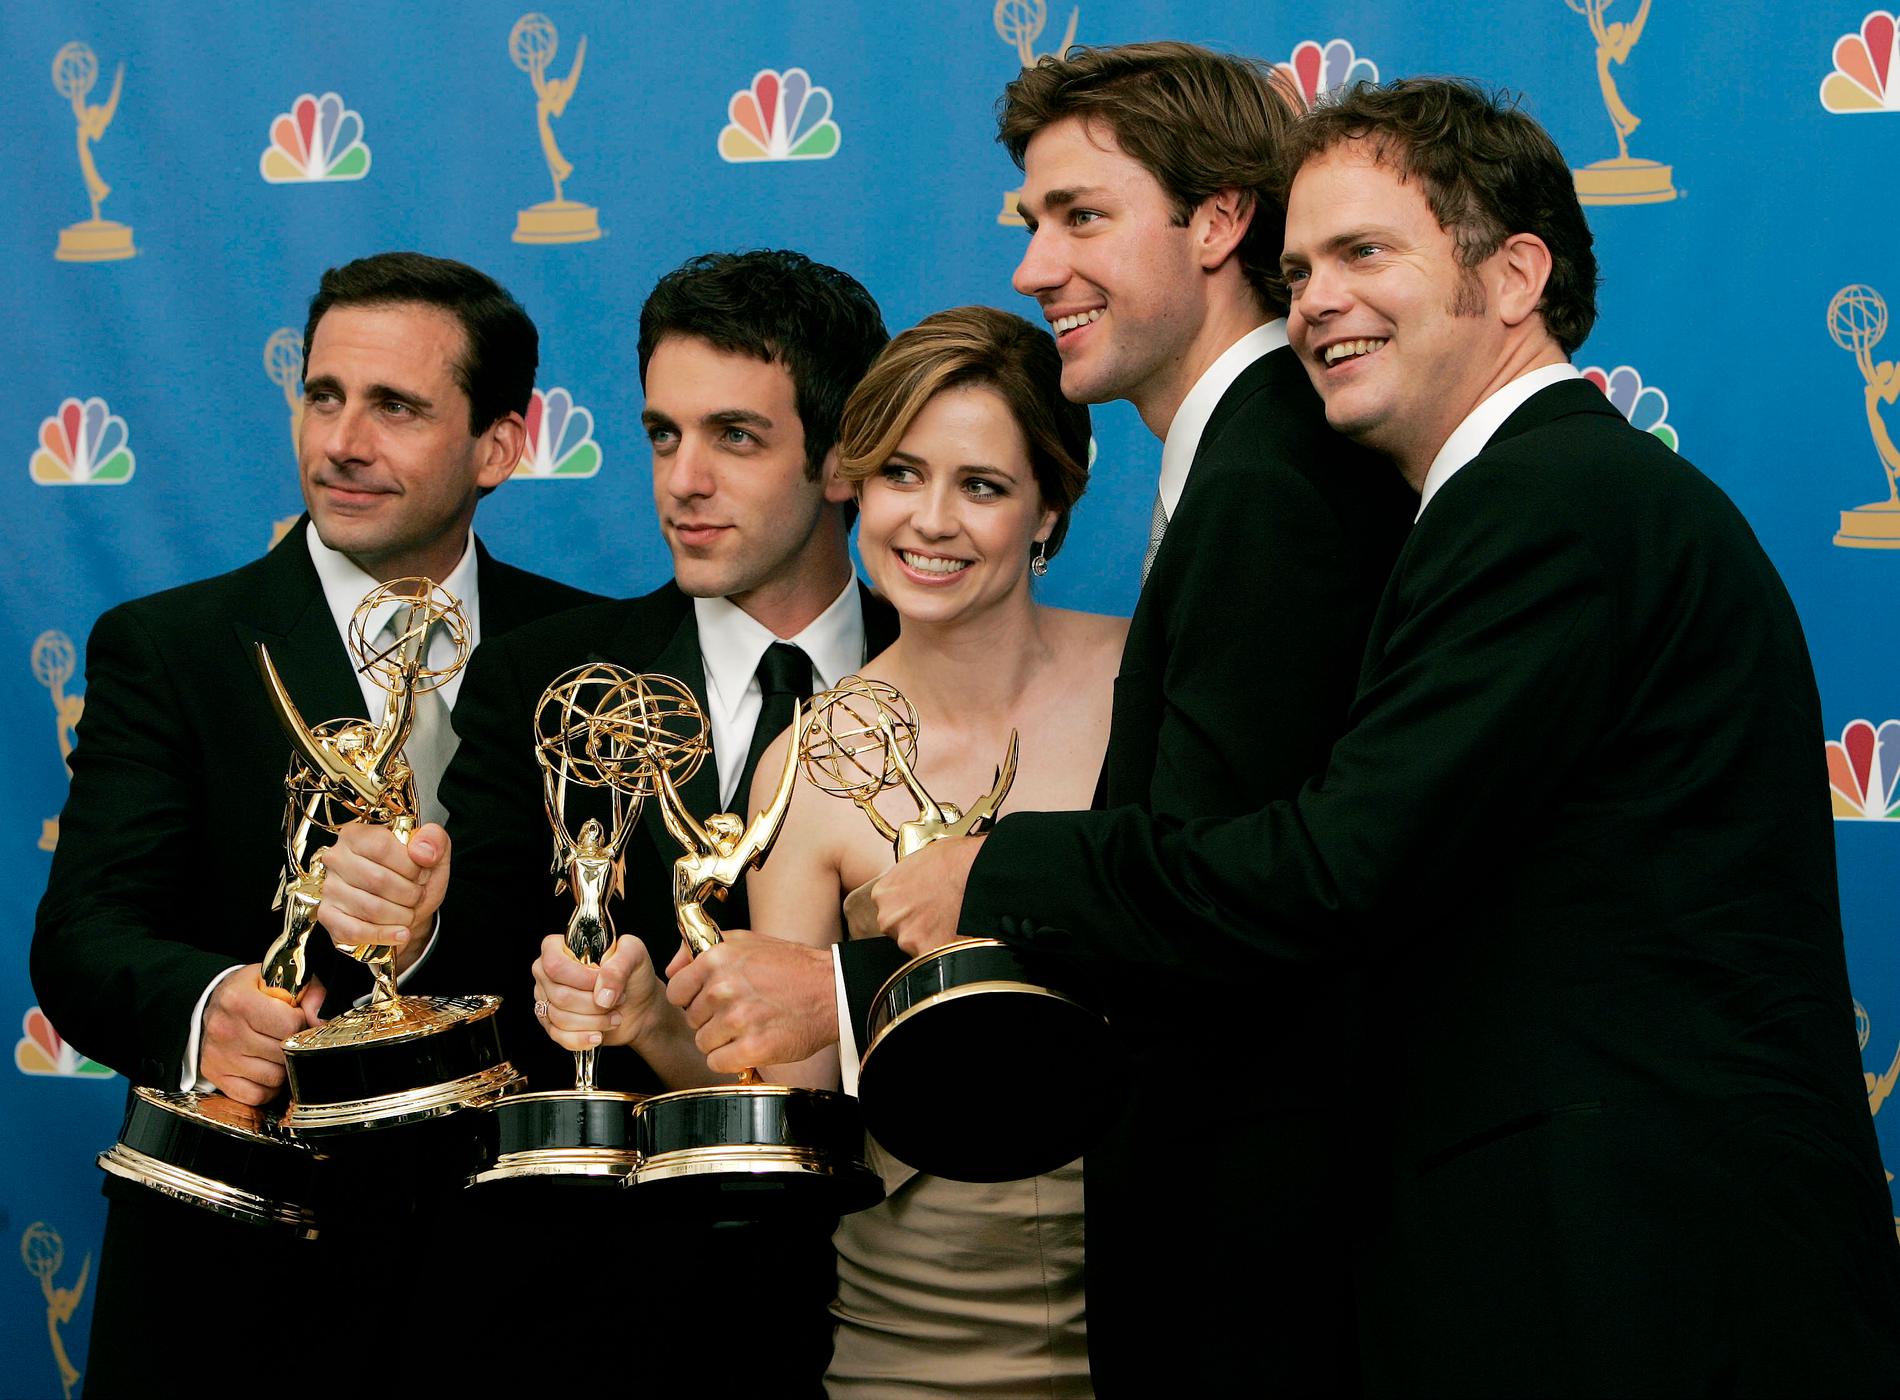 Steve Carrell, B.J. Novak, Jenna Fischer, John Krasinski och Rainn Wilson tog emot pris när ”The office” vann Emmy för bästa komediserie 2006.